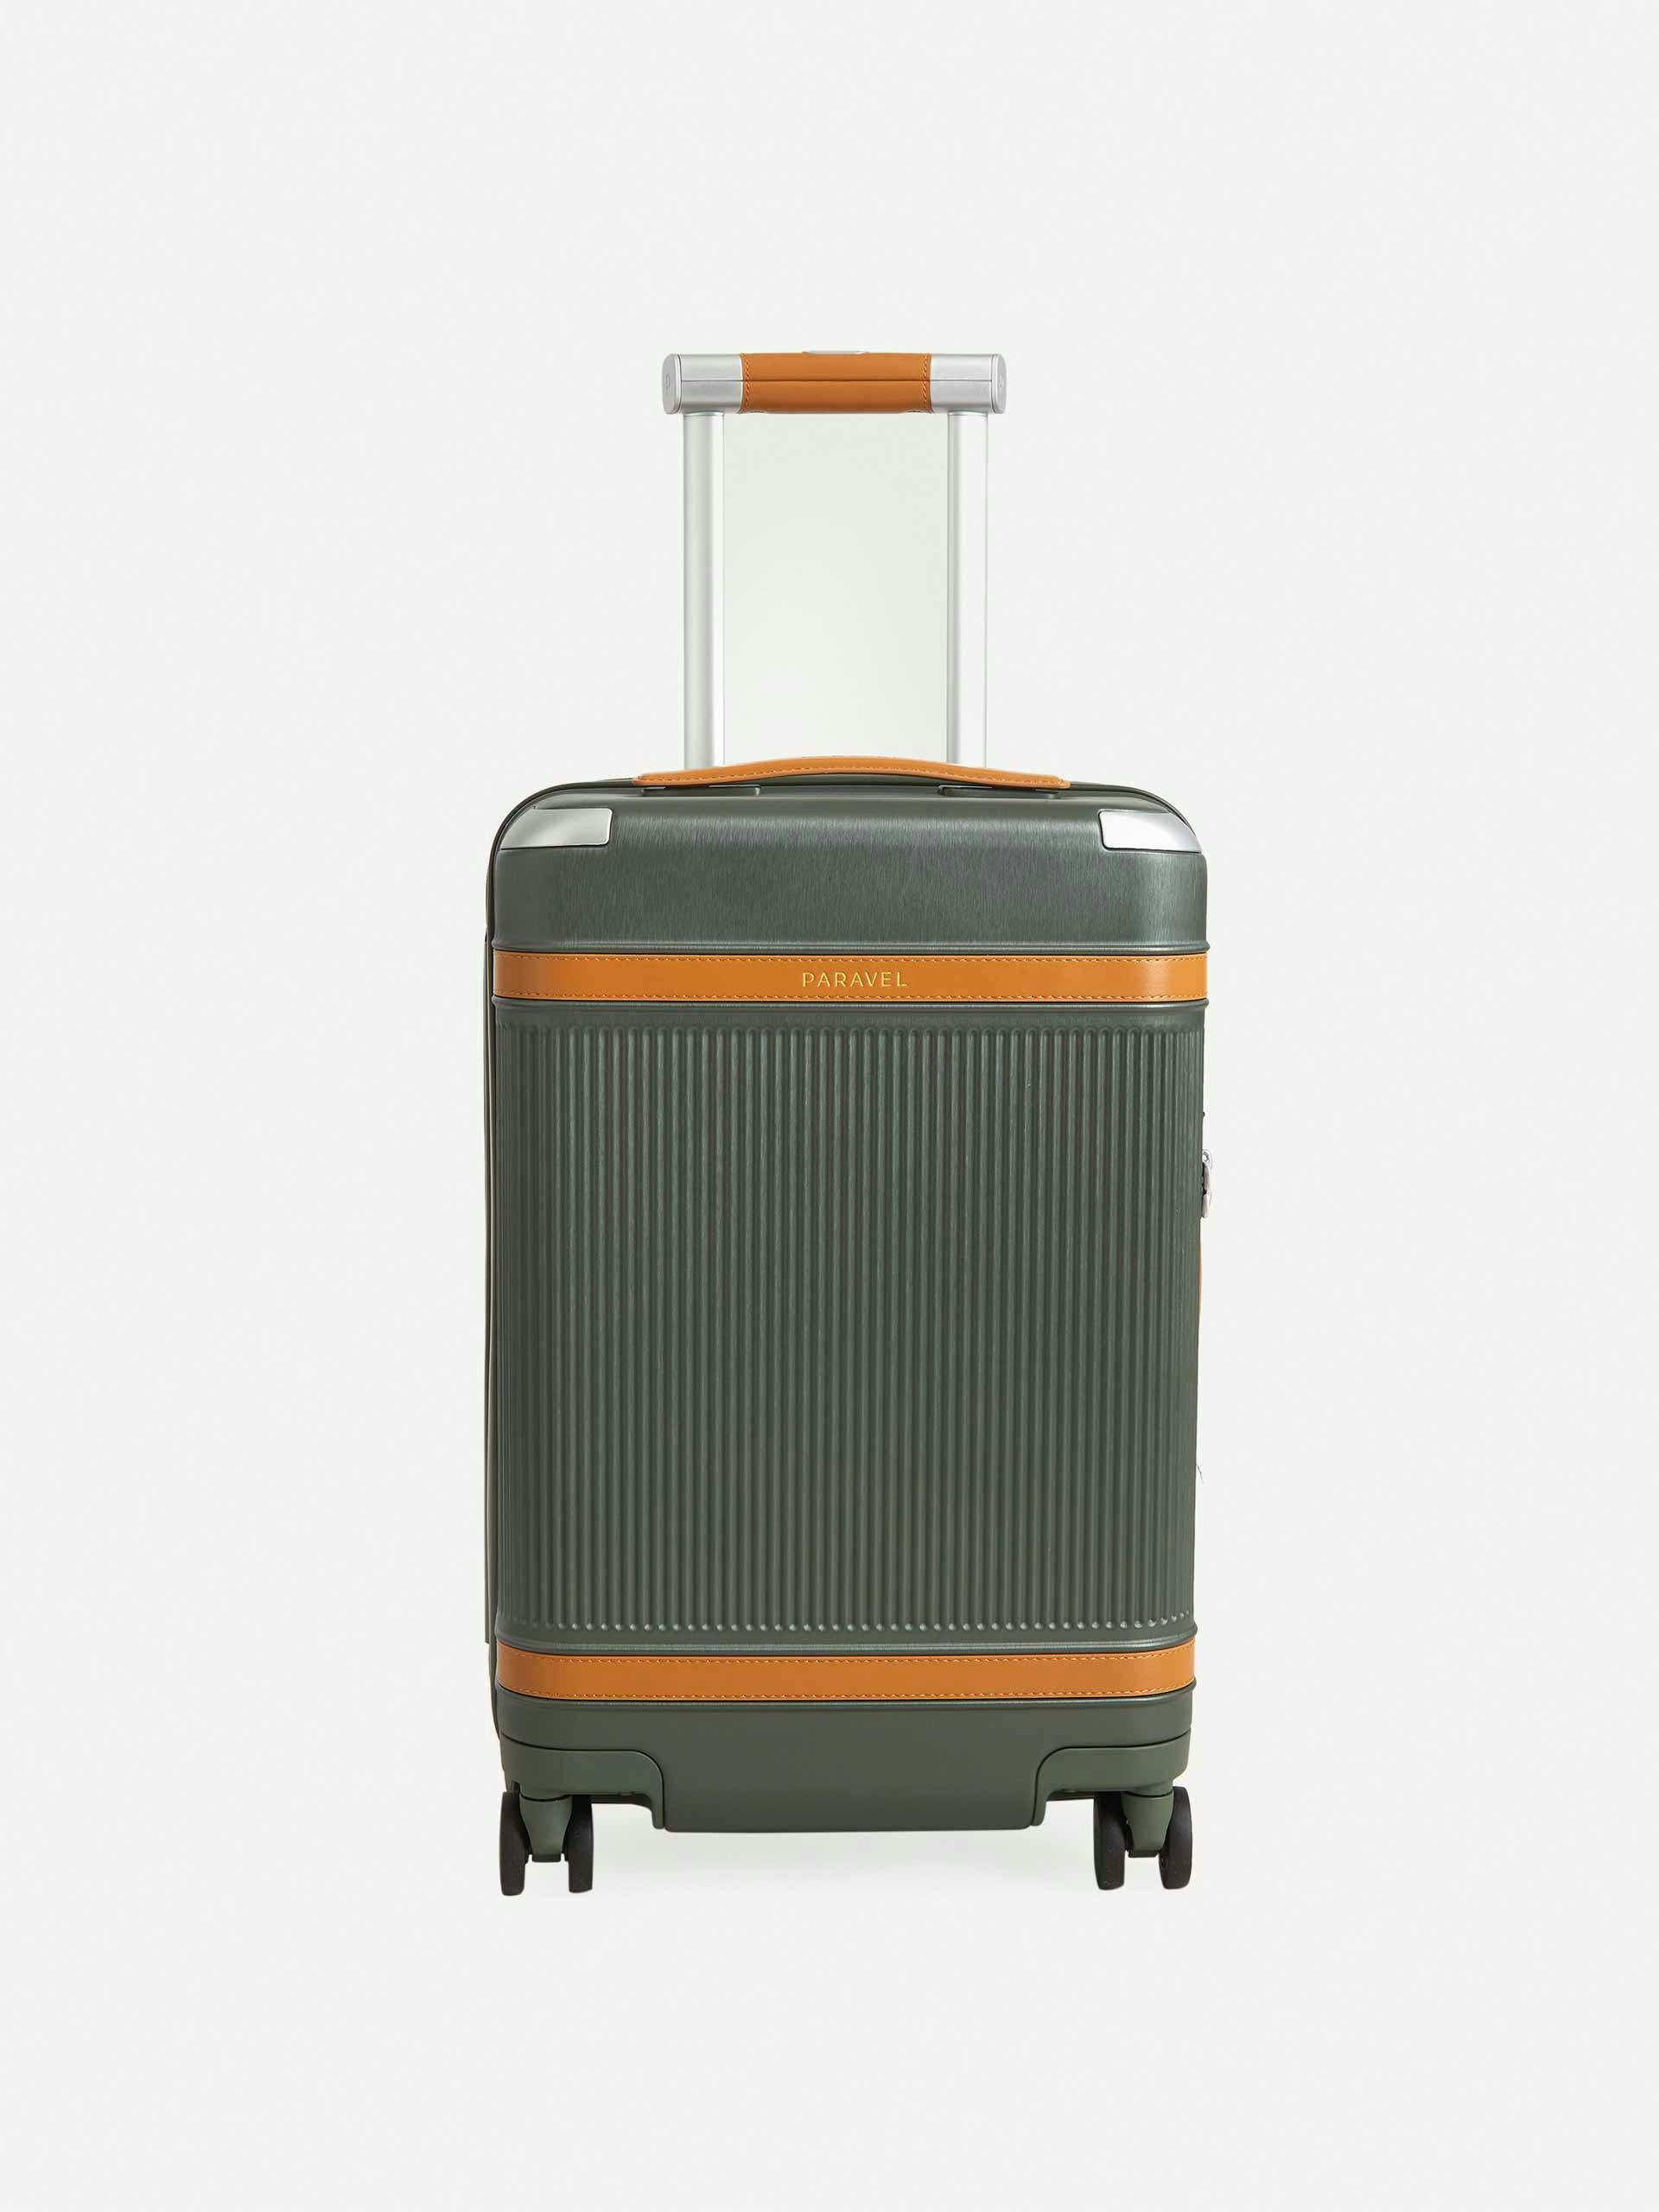 Khaki and orange suitcase